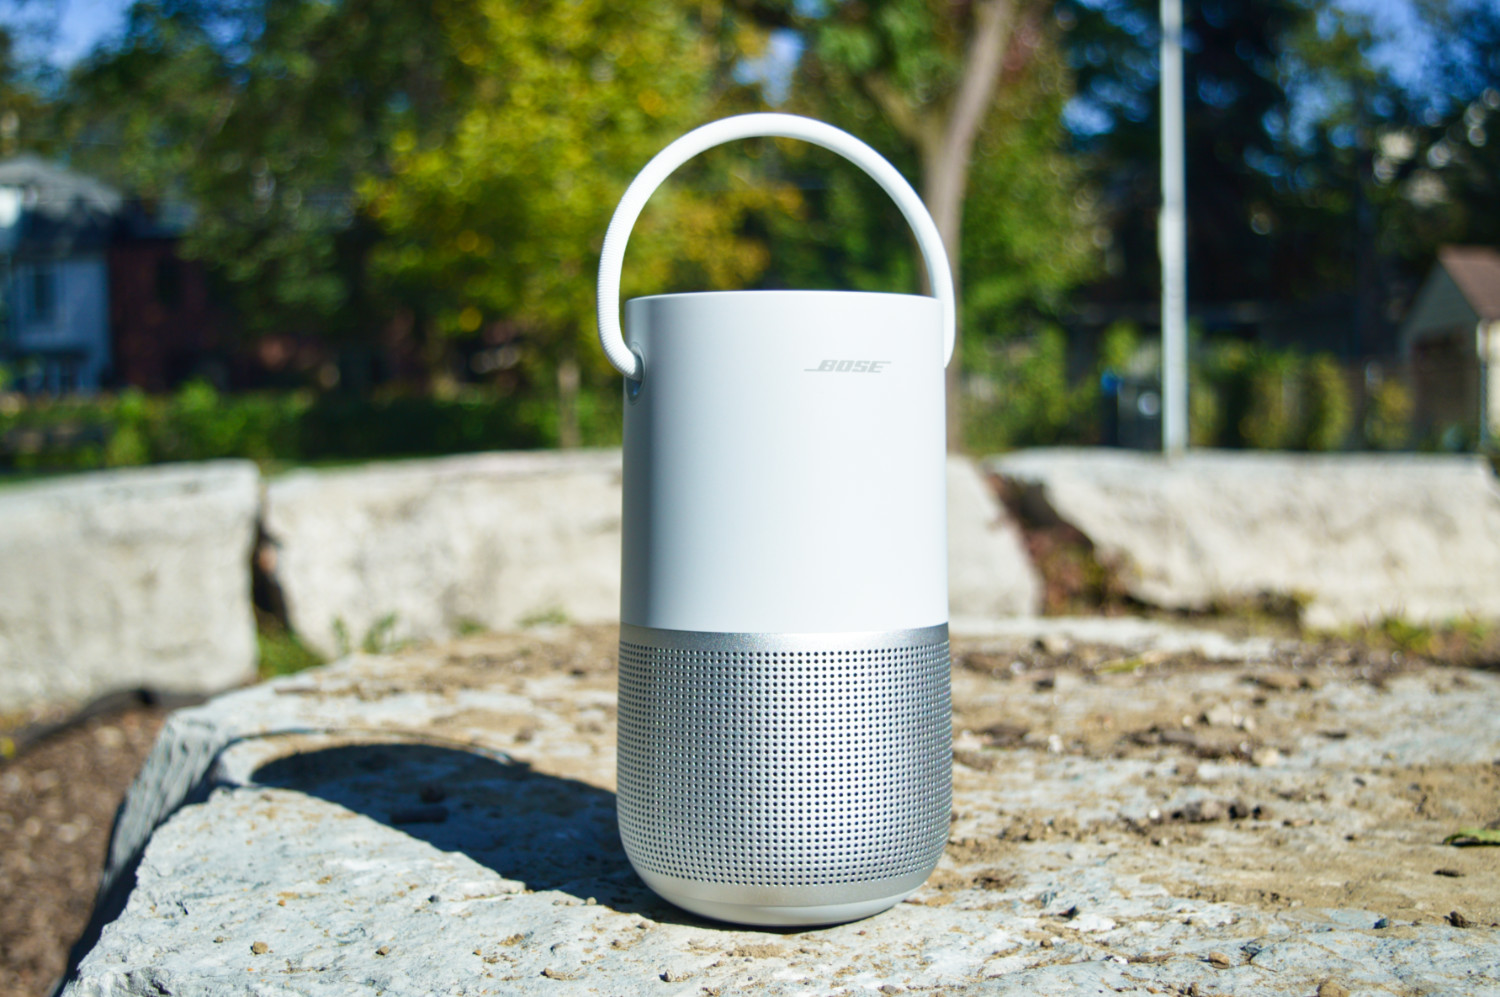 bose portable home speaker smart スピーカー オーディオ機器 家電・スマホ・カメラ アウトレット 値段